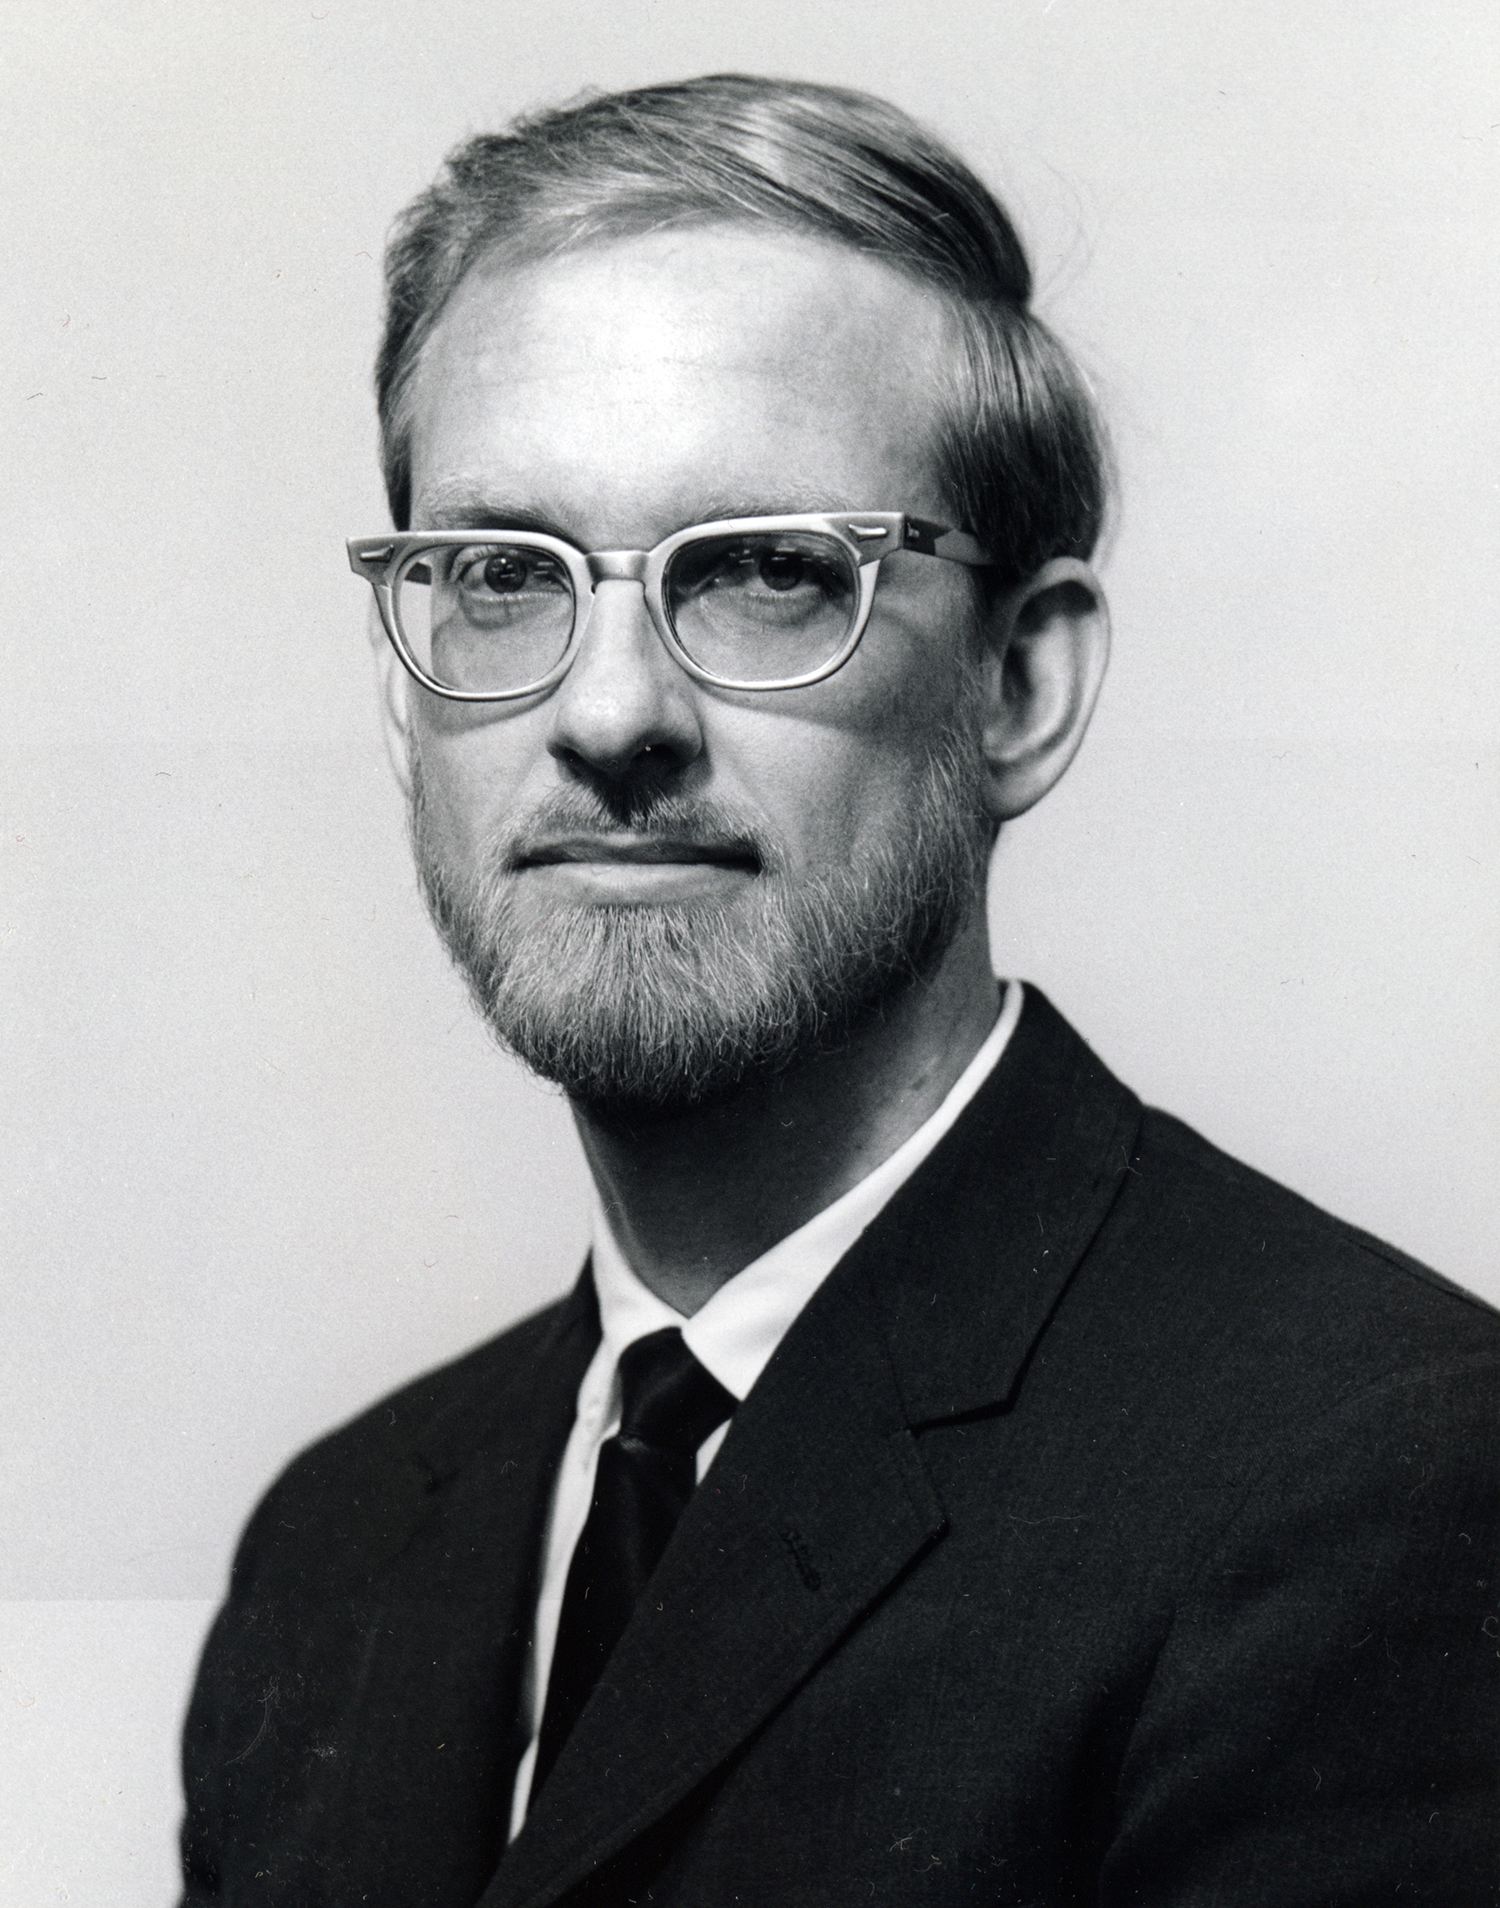 Photo of Dean Carl Presnall in 1975